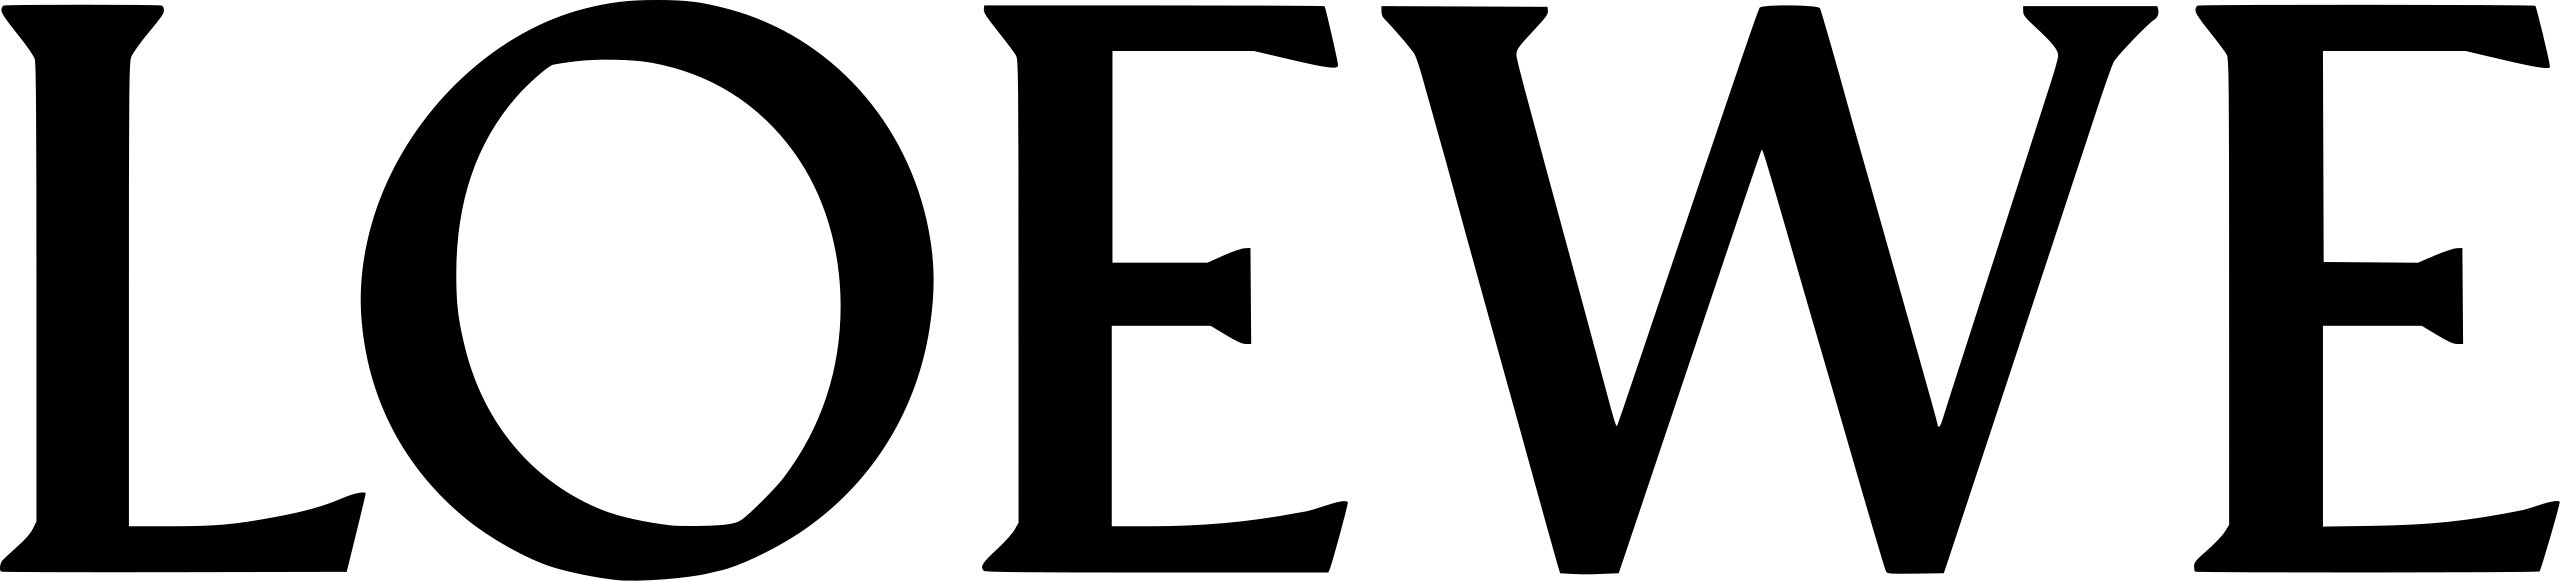 Loewe_logo.svg